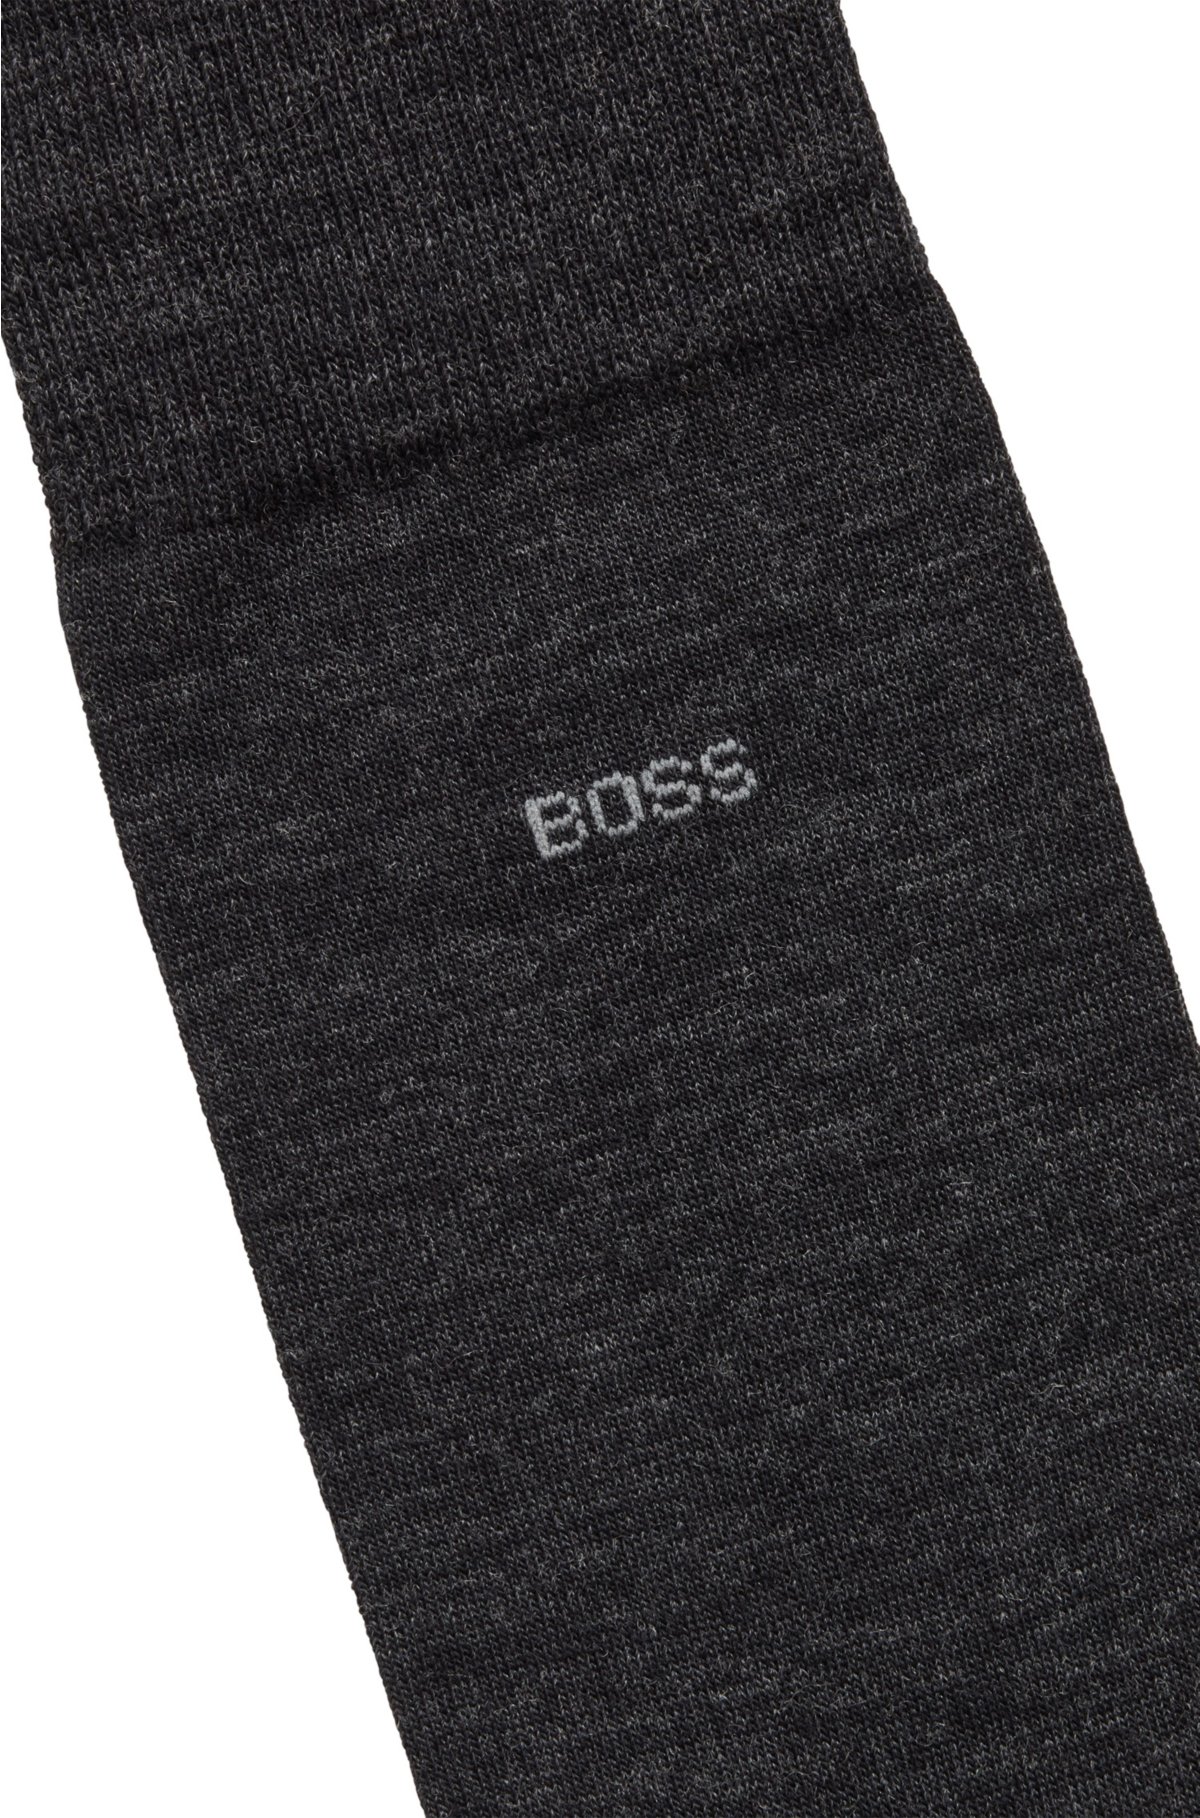 BOSS Strømper i almindelig længde med logo fremstillet i en